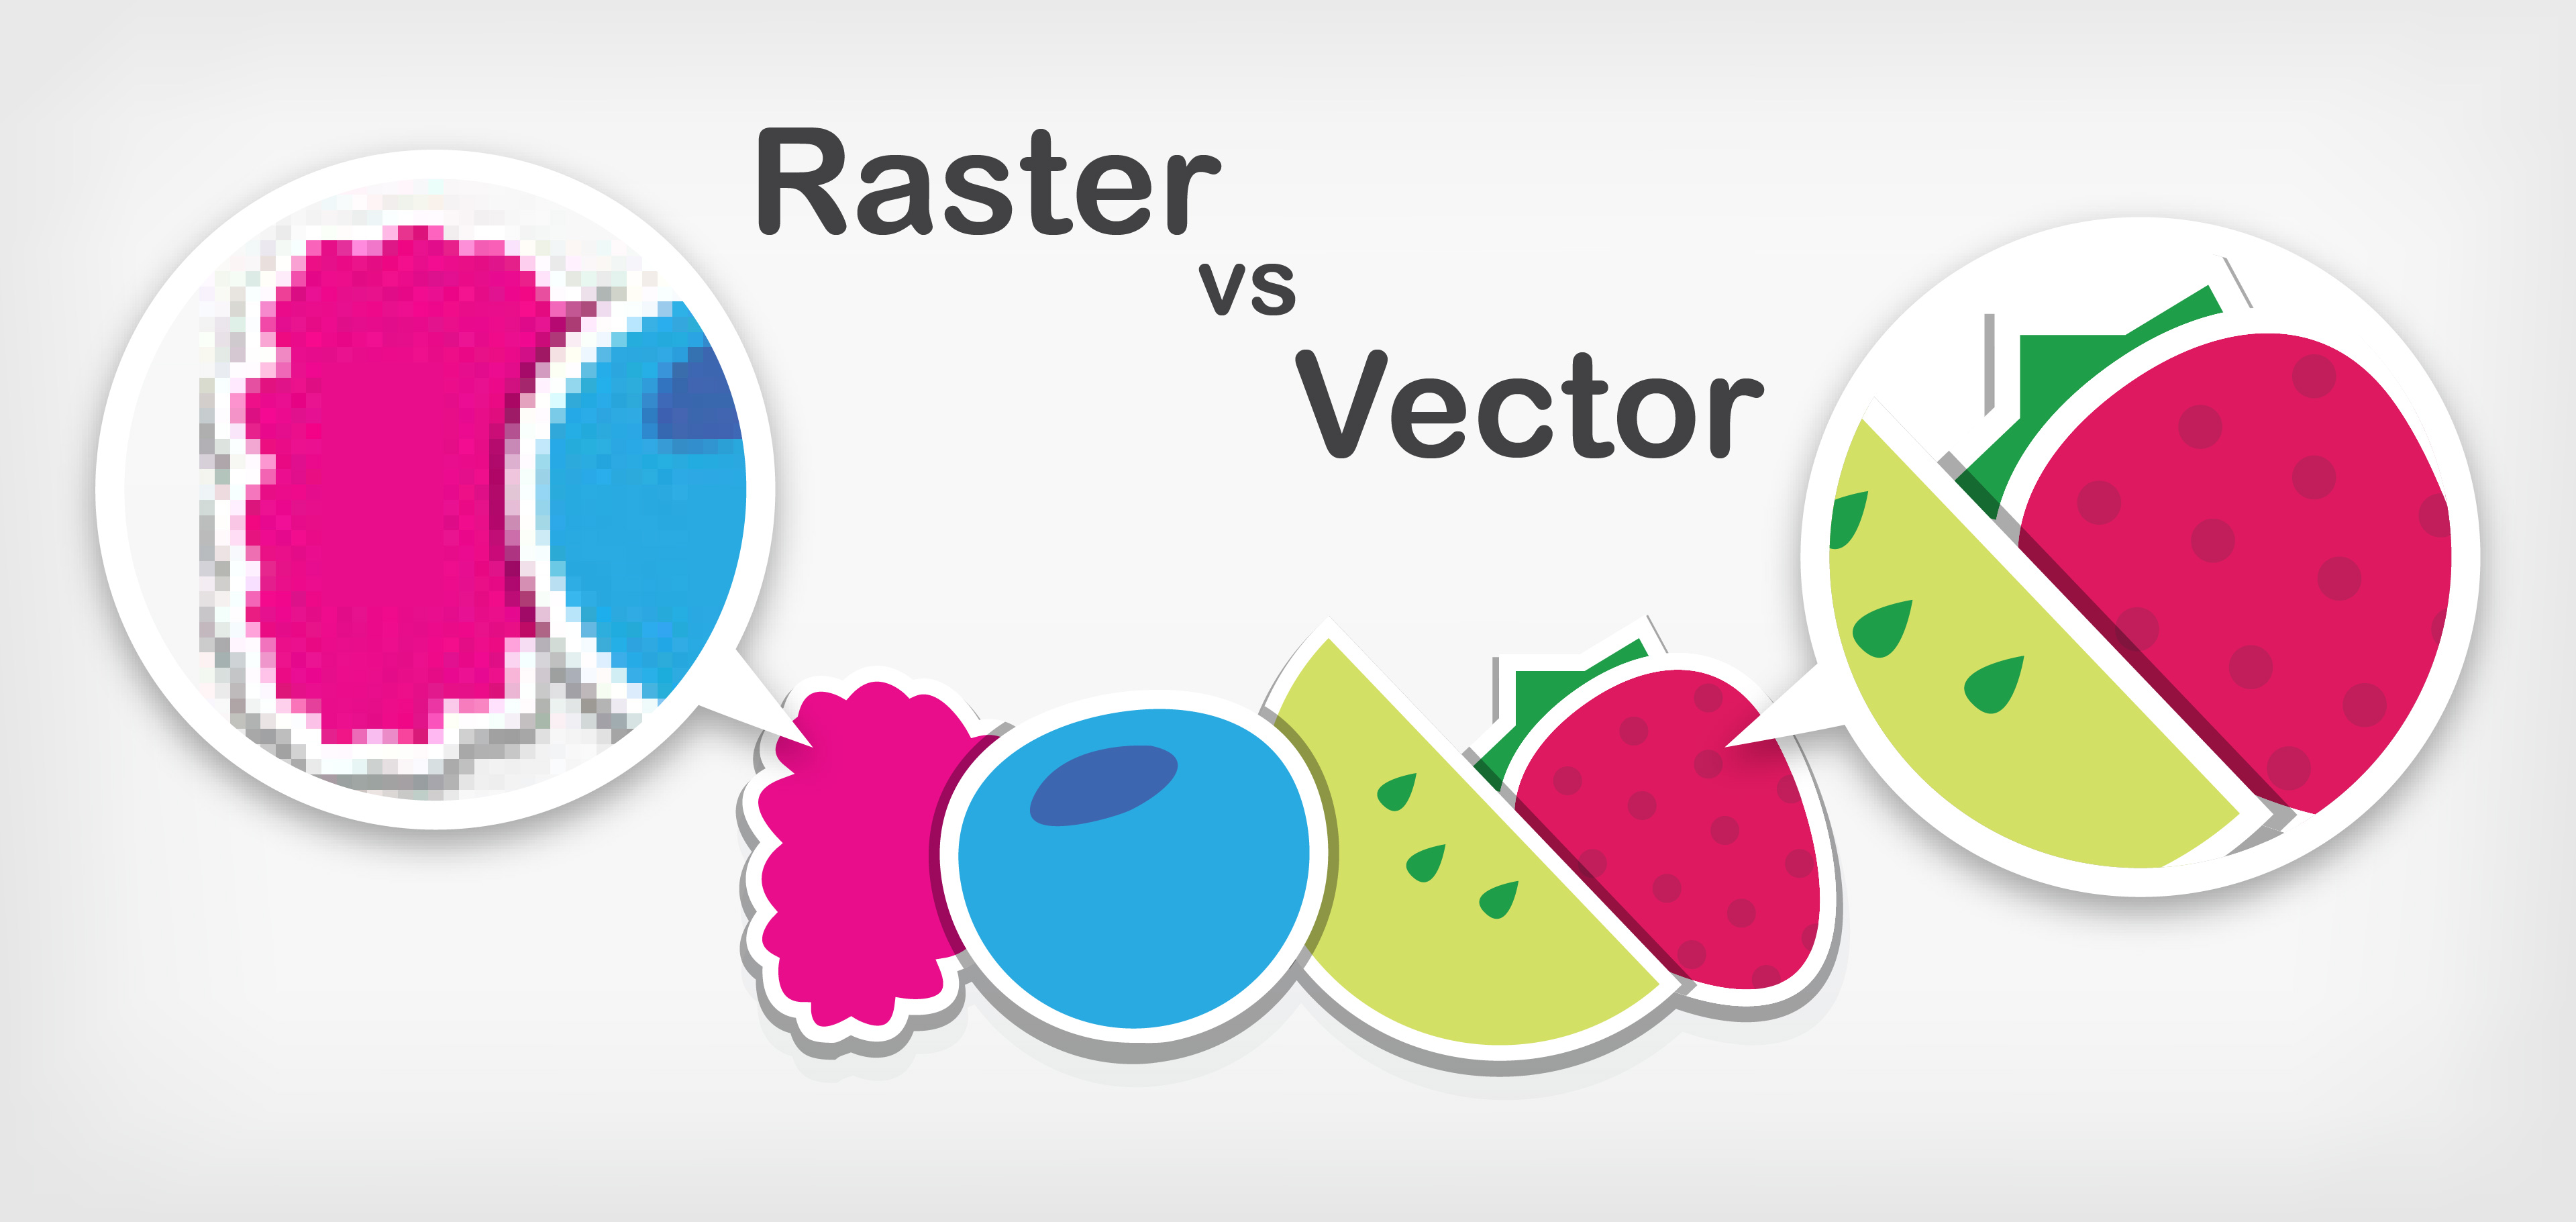 raster_vs_vector_image.jpg